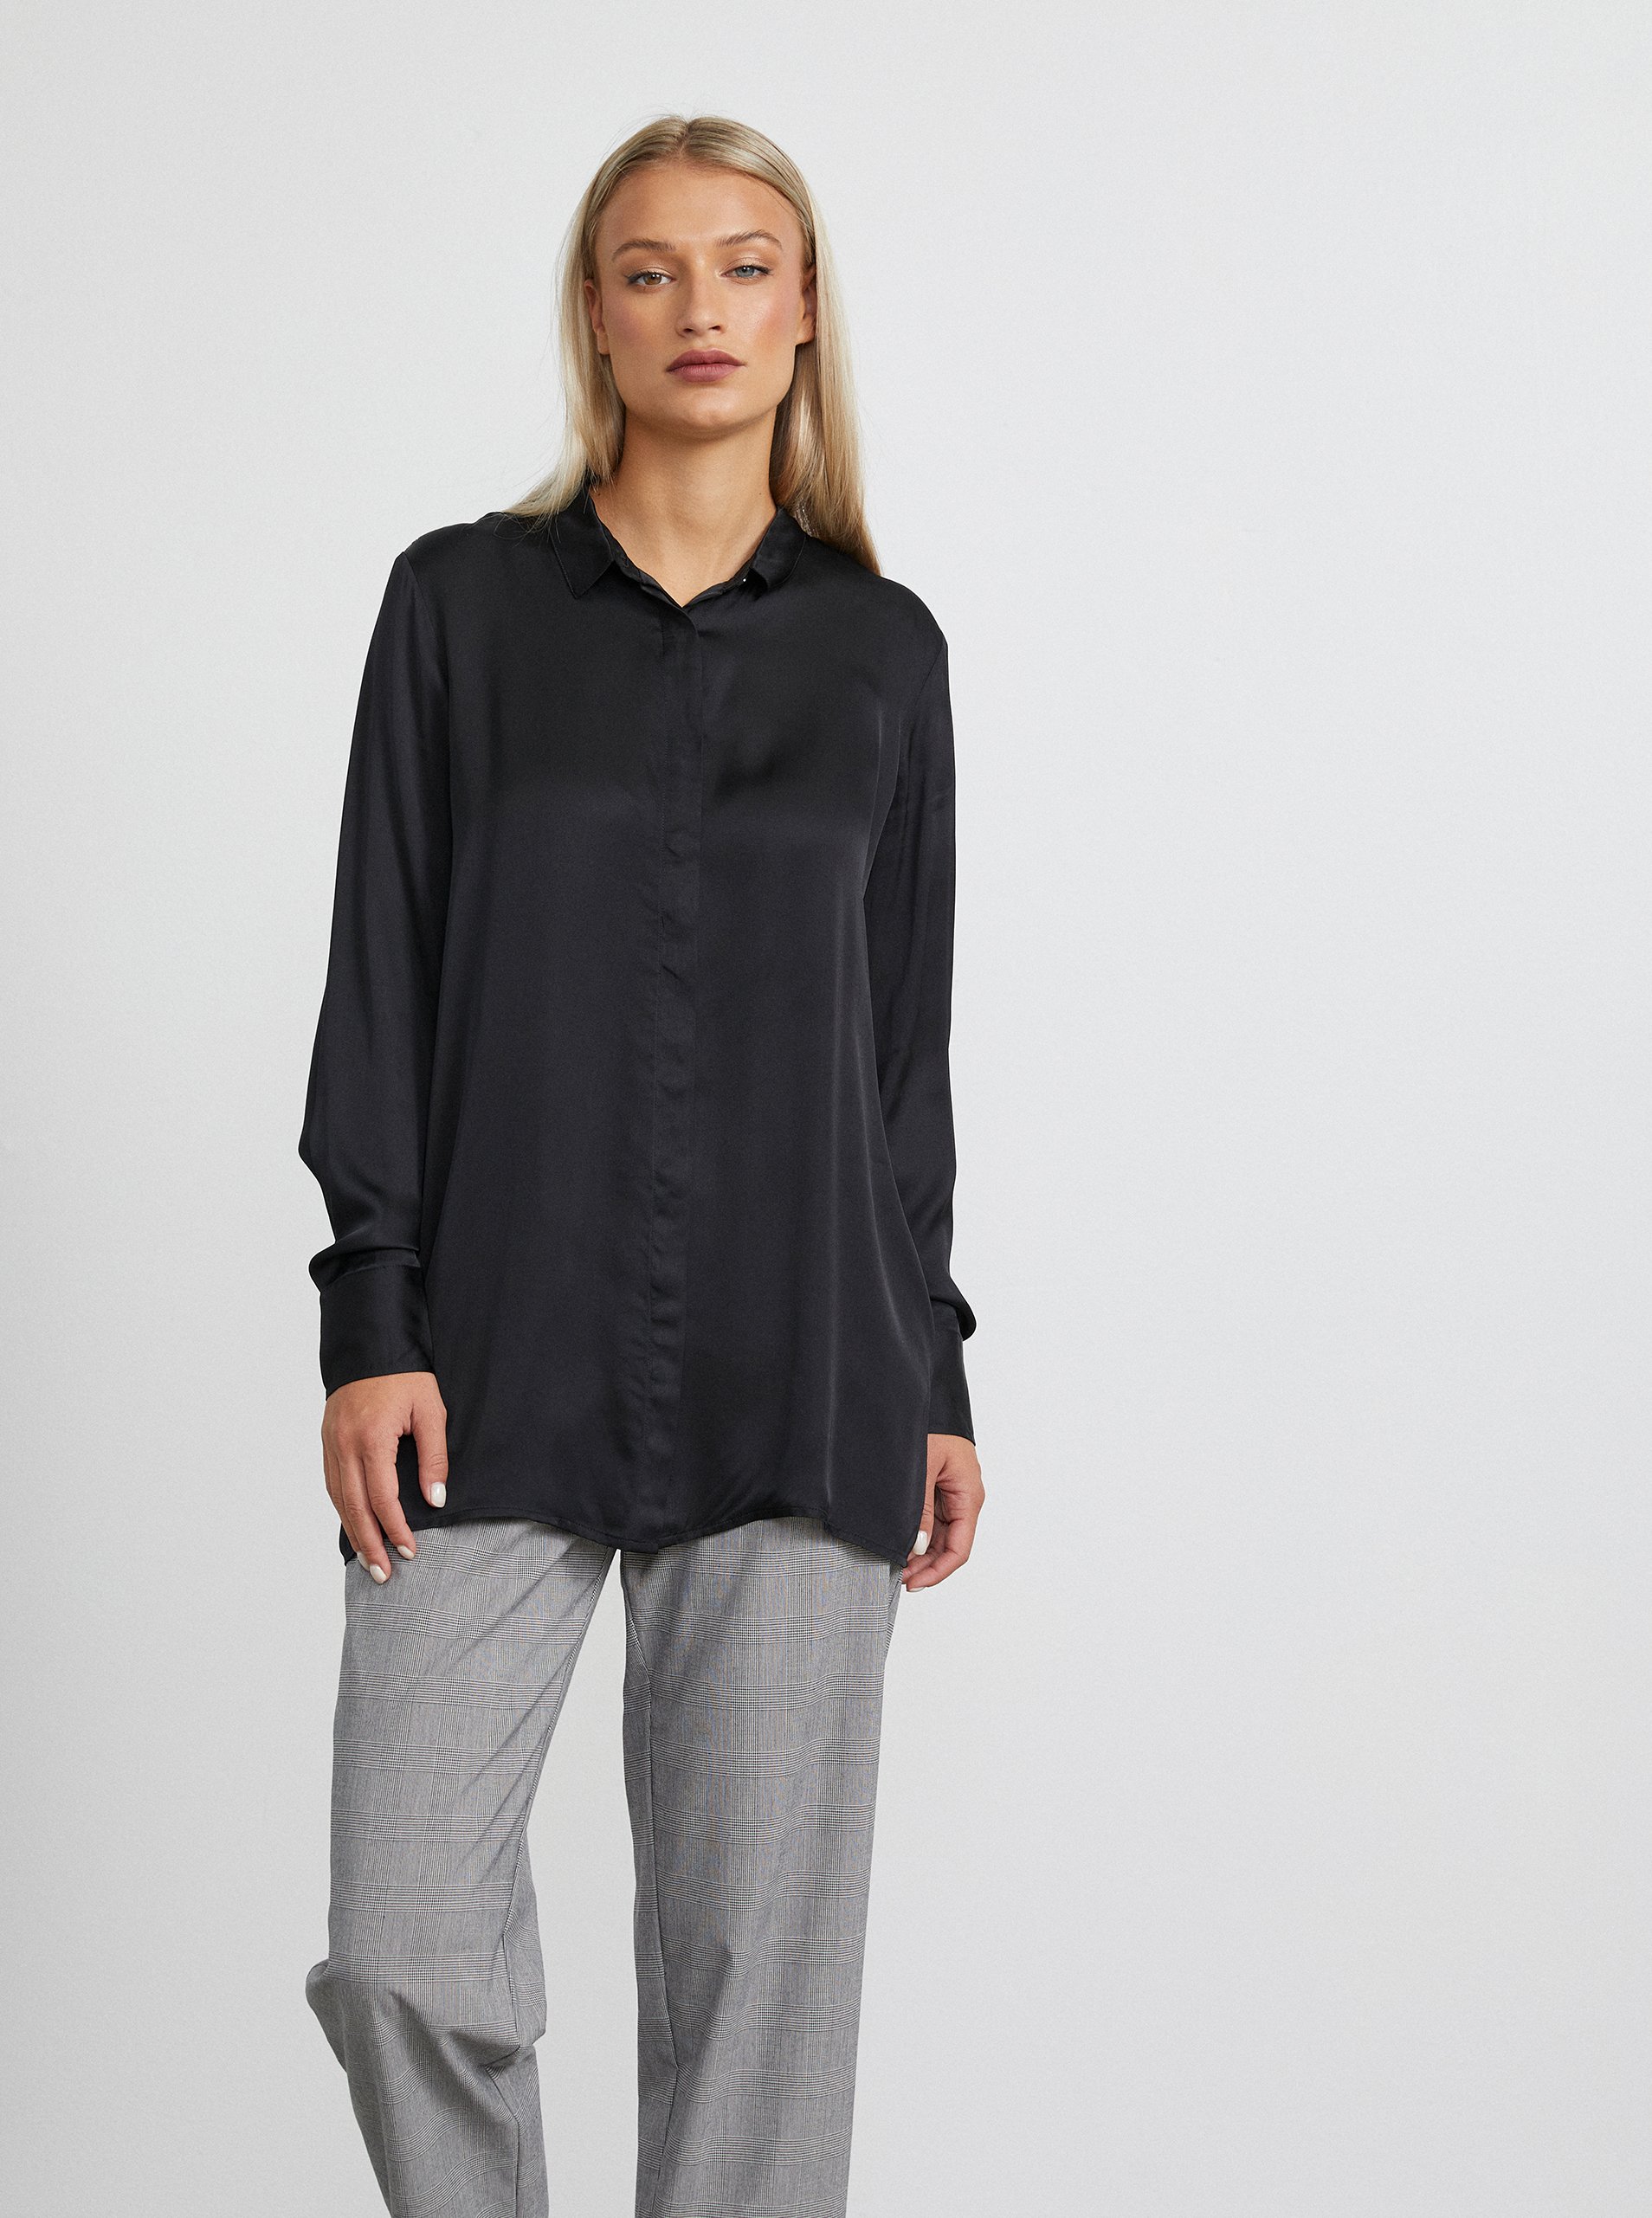 E-shop Černá dámská dlouhá košile METROOPOLIS by ZOOT.lab Angela